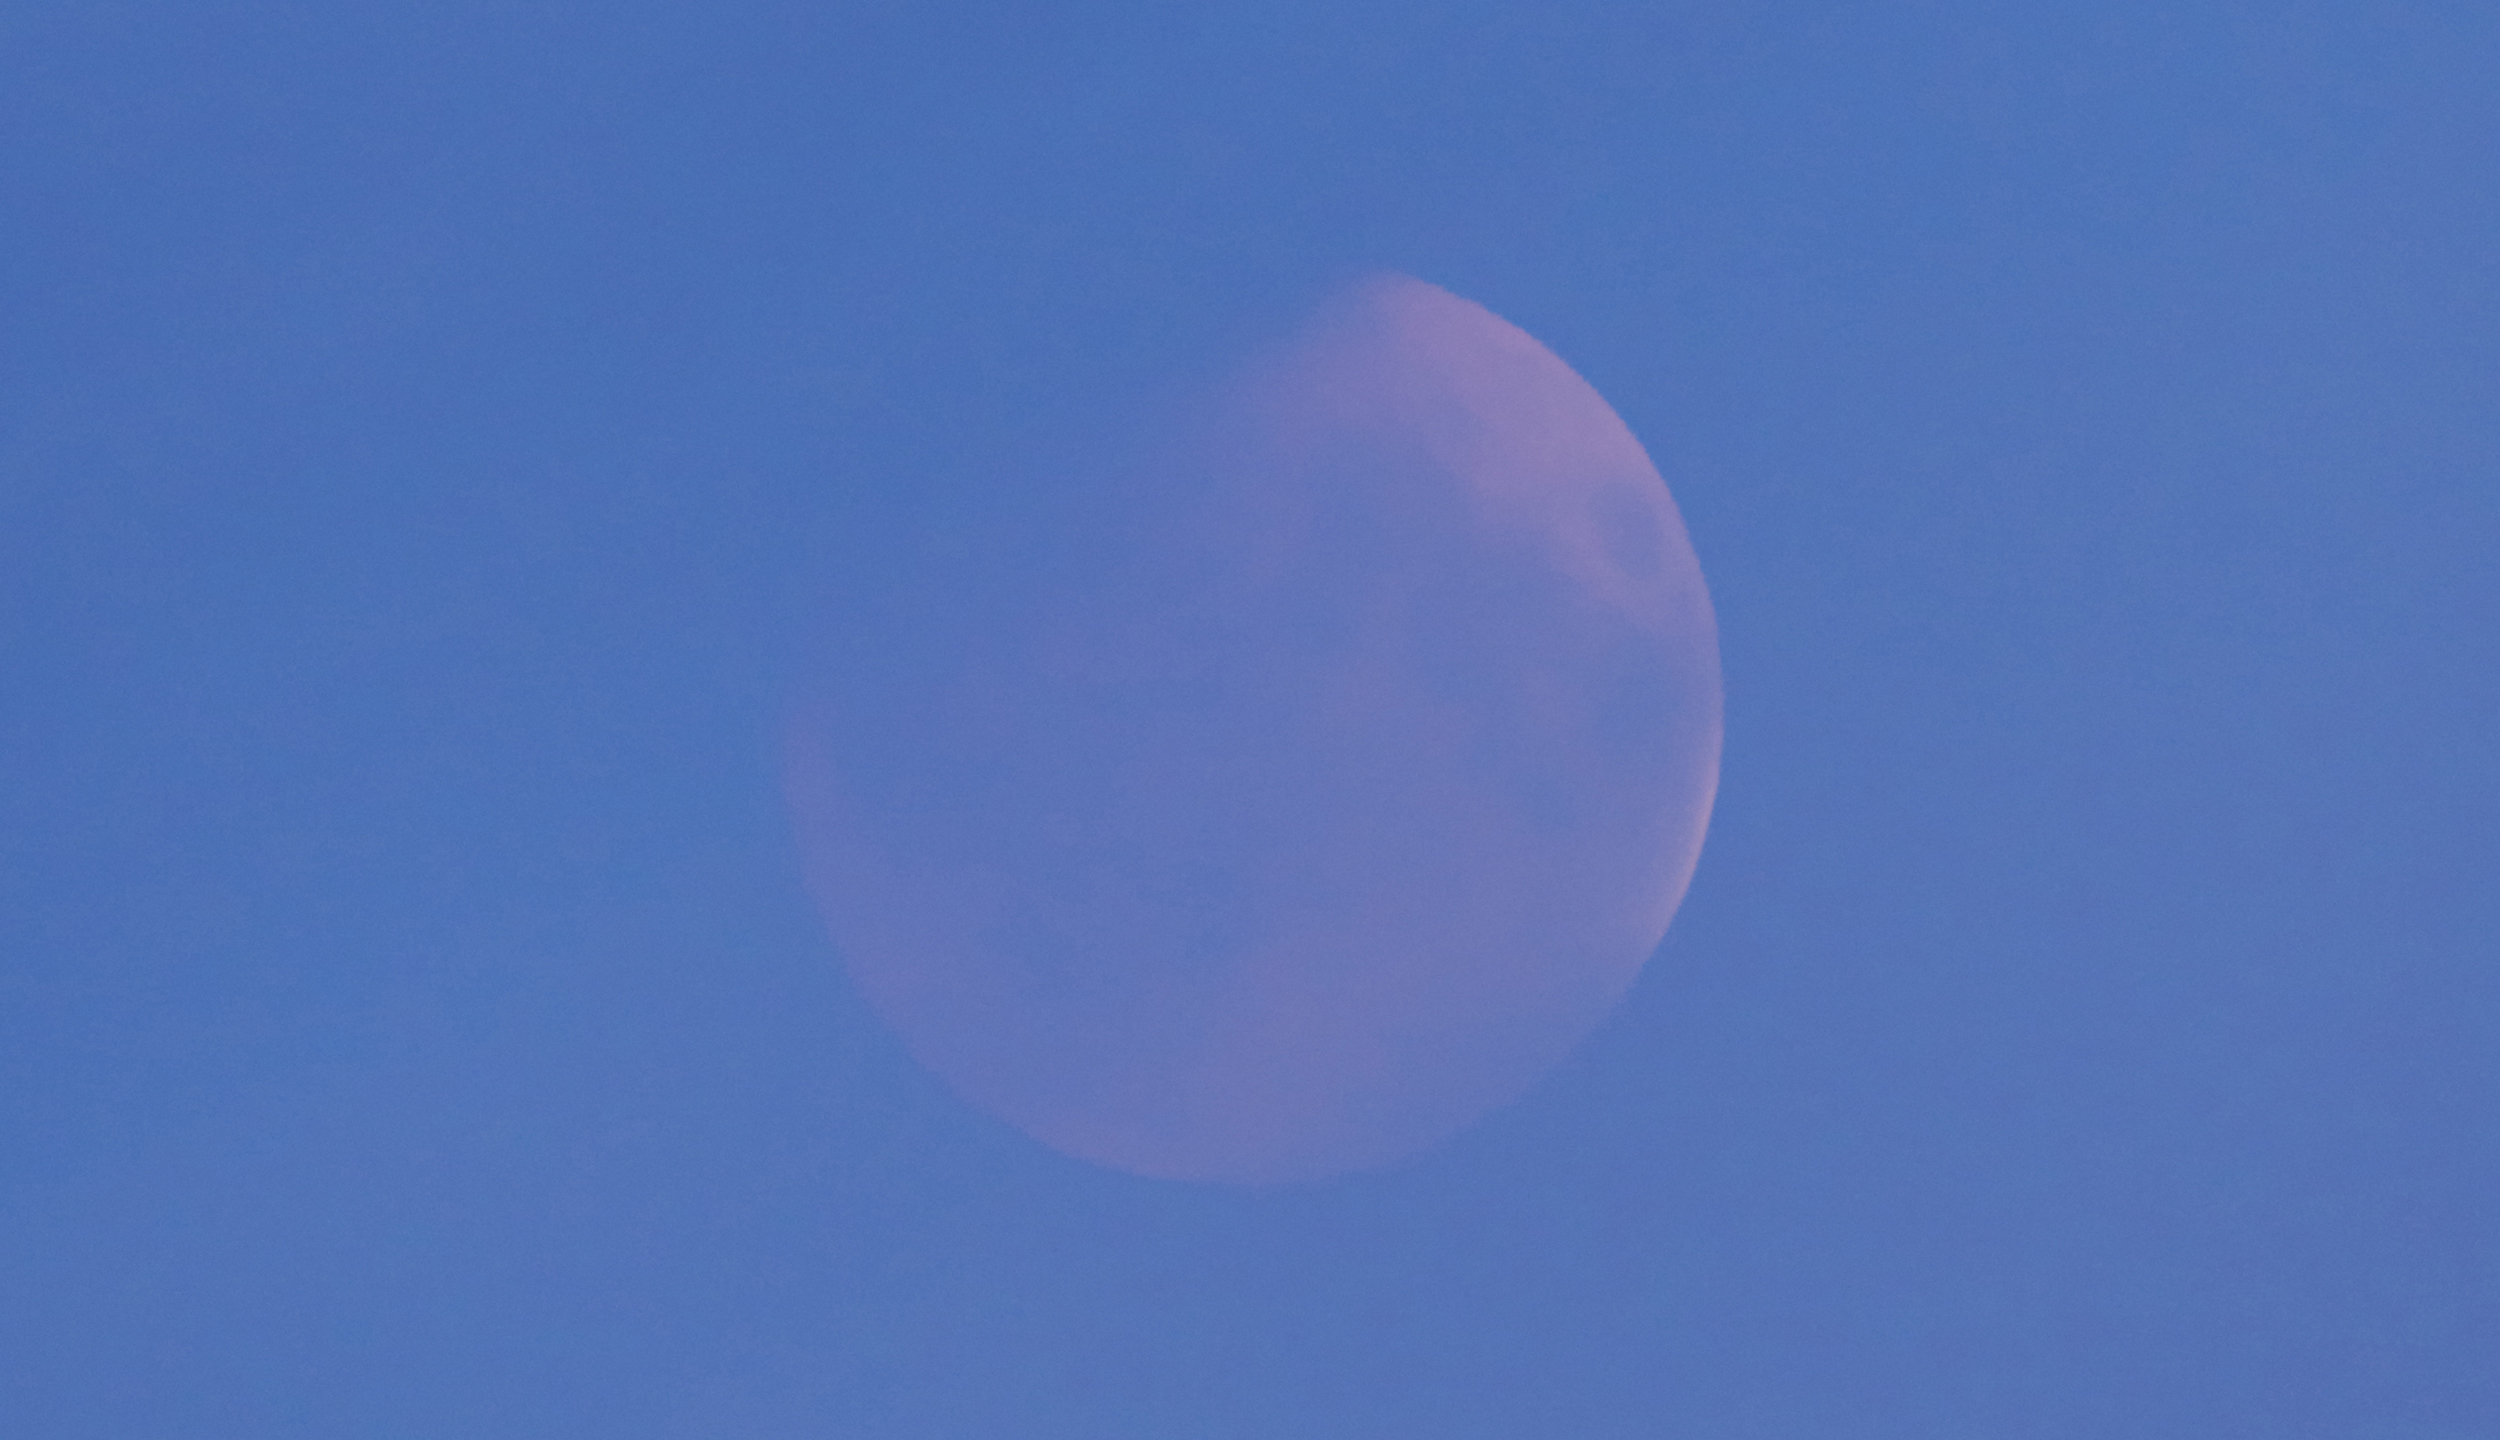 L’éclipse totale de Lune du 16 mai 2022 à 5 h 29 min (Temps légal français) depuis le toit de l’Observatoire de Paris